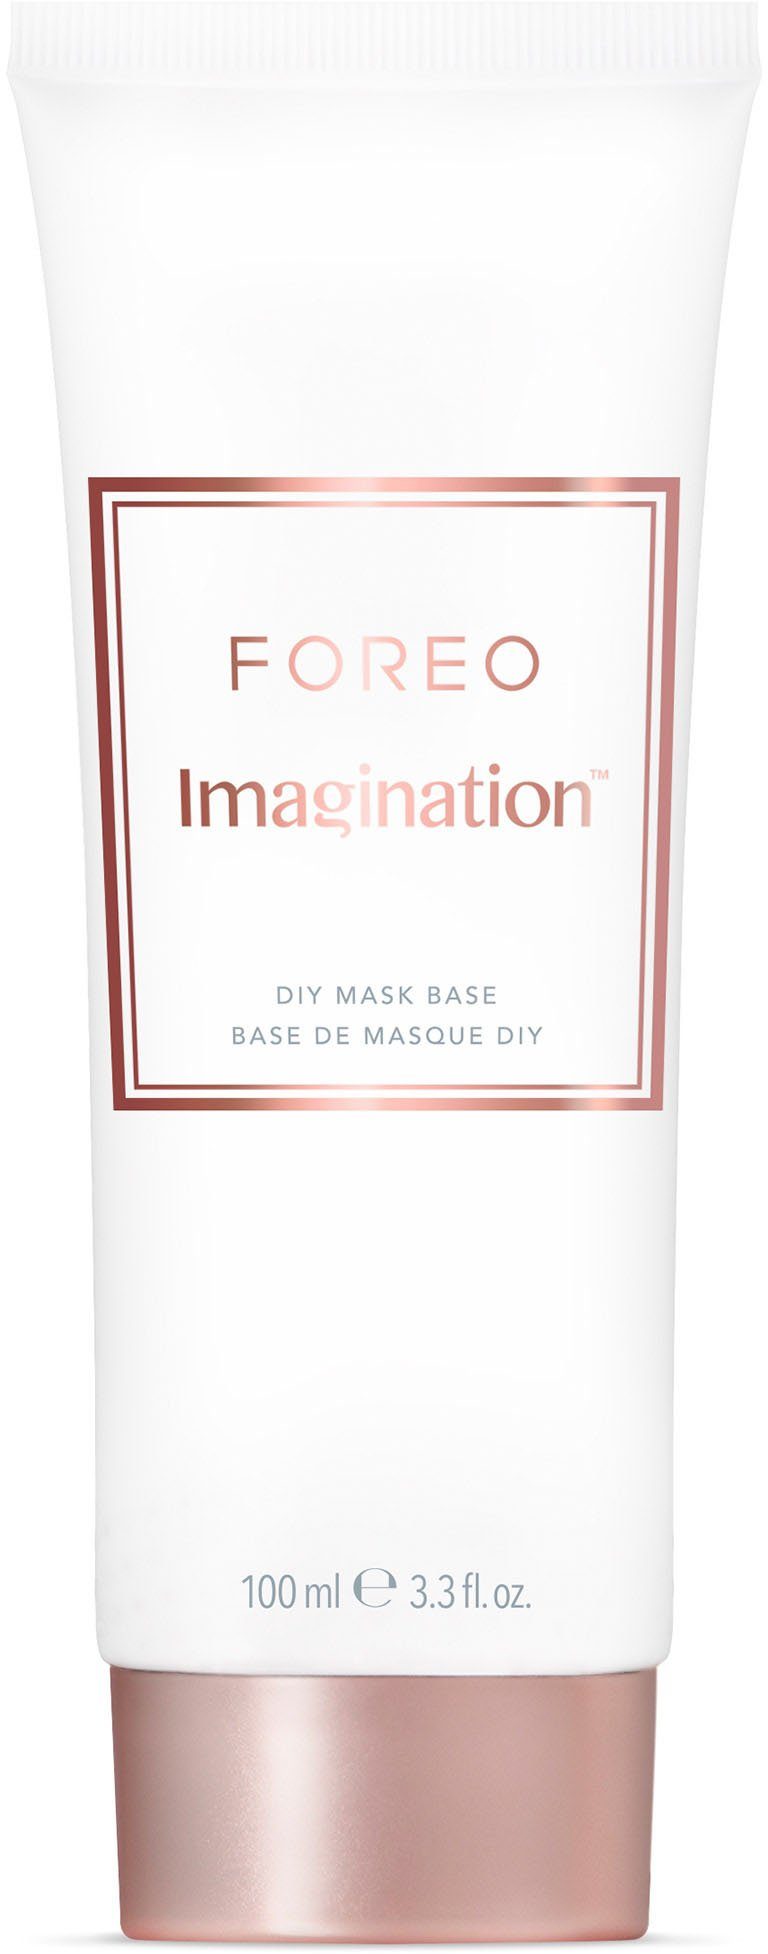 FOREO Gesichtsmaske Imagination Mask DIY 100ml Base